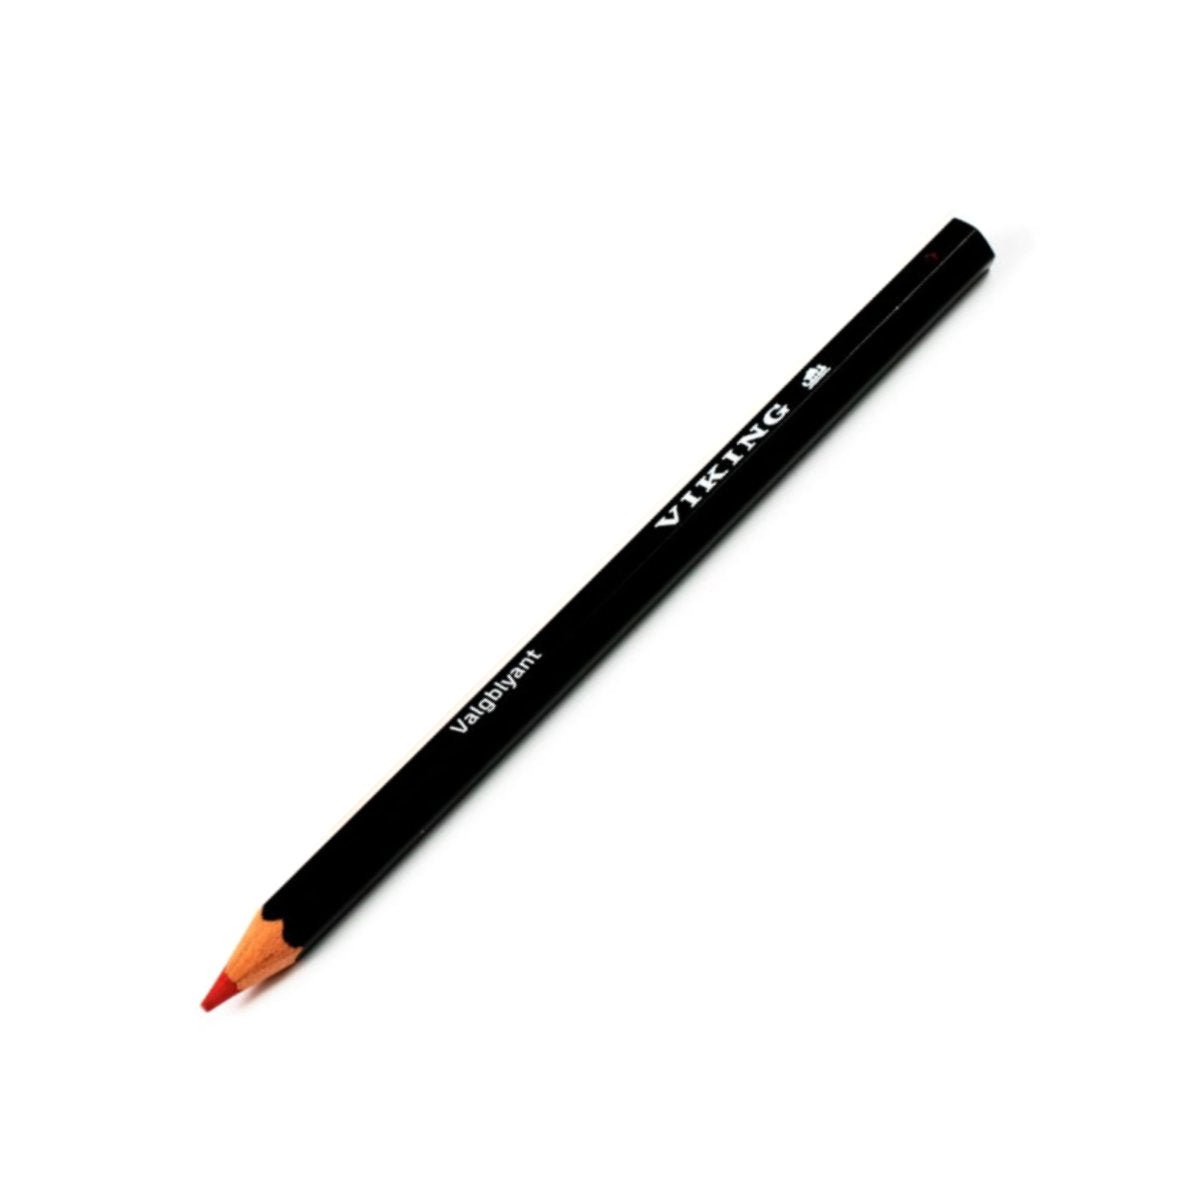 Viking Electoral Pencil - Notegeist